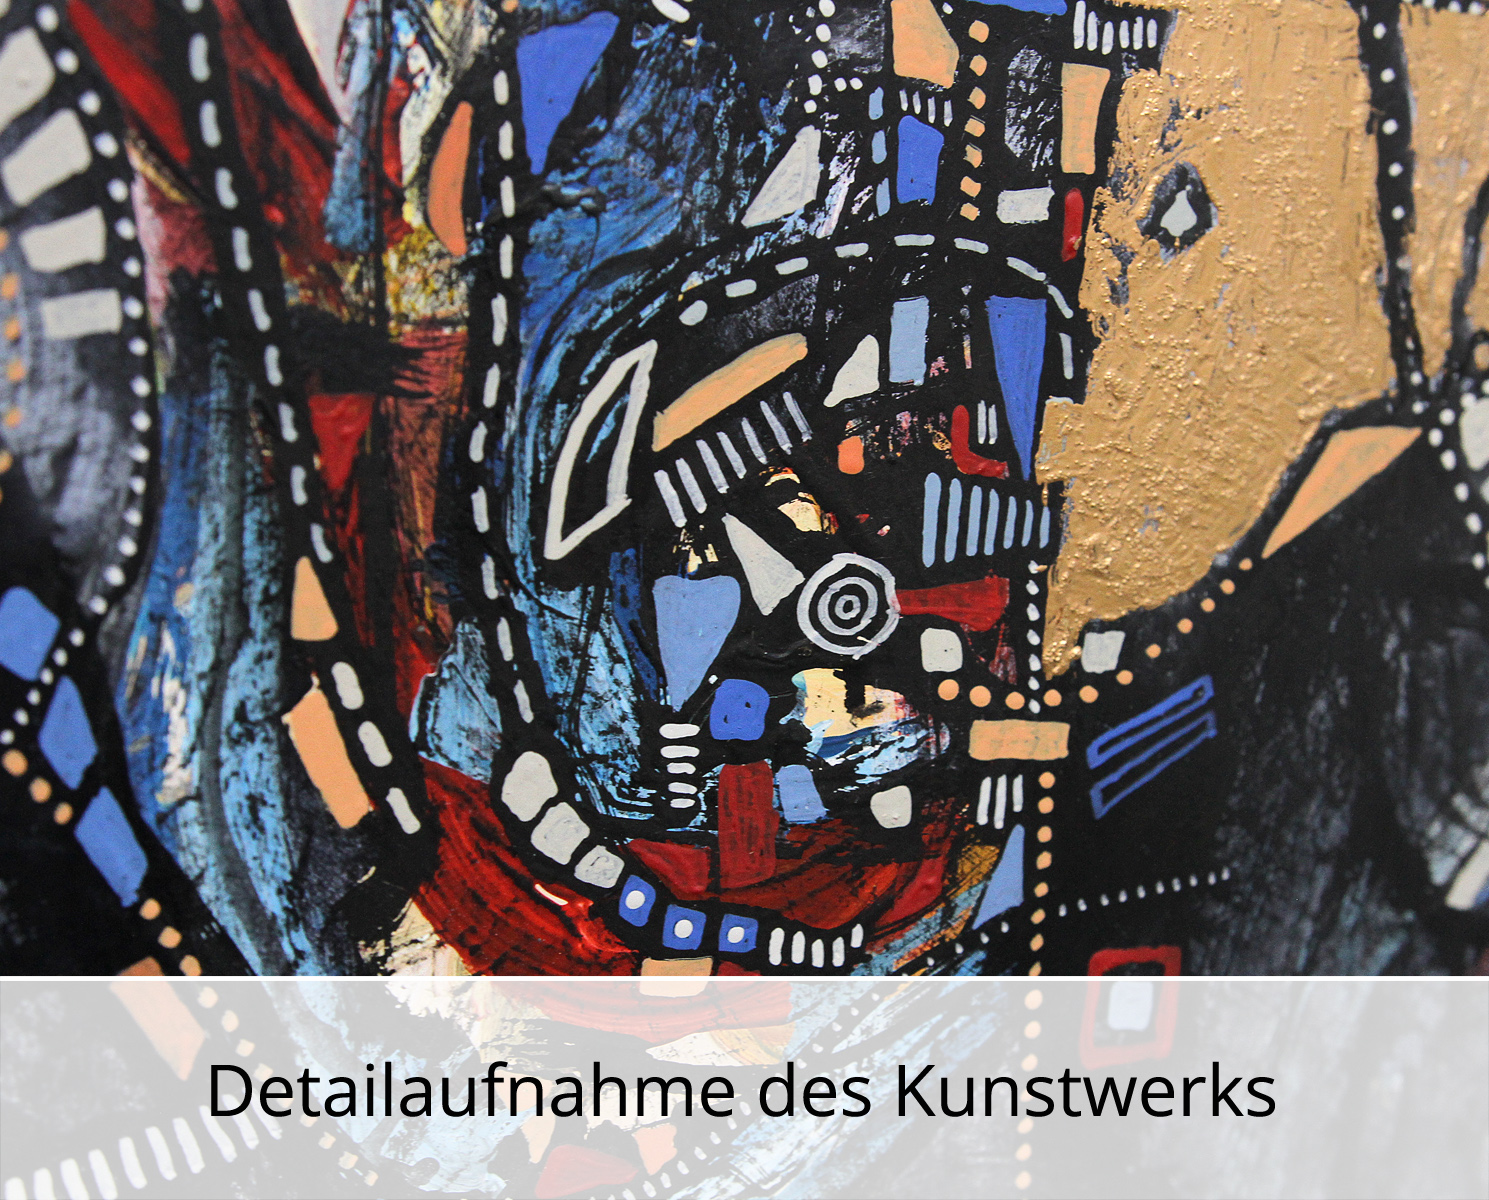 C. Blechschmidt: "Reichenbacher Schrei", Original/Unikat, zeitgenössisches Ölgemälde